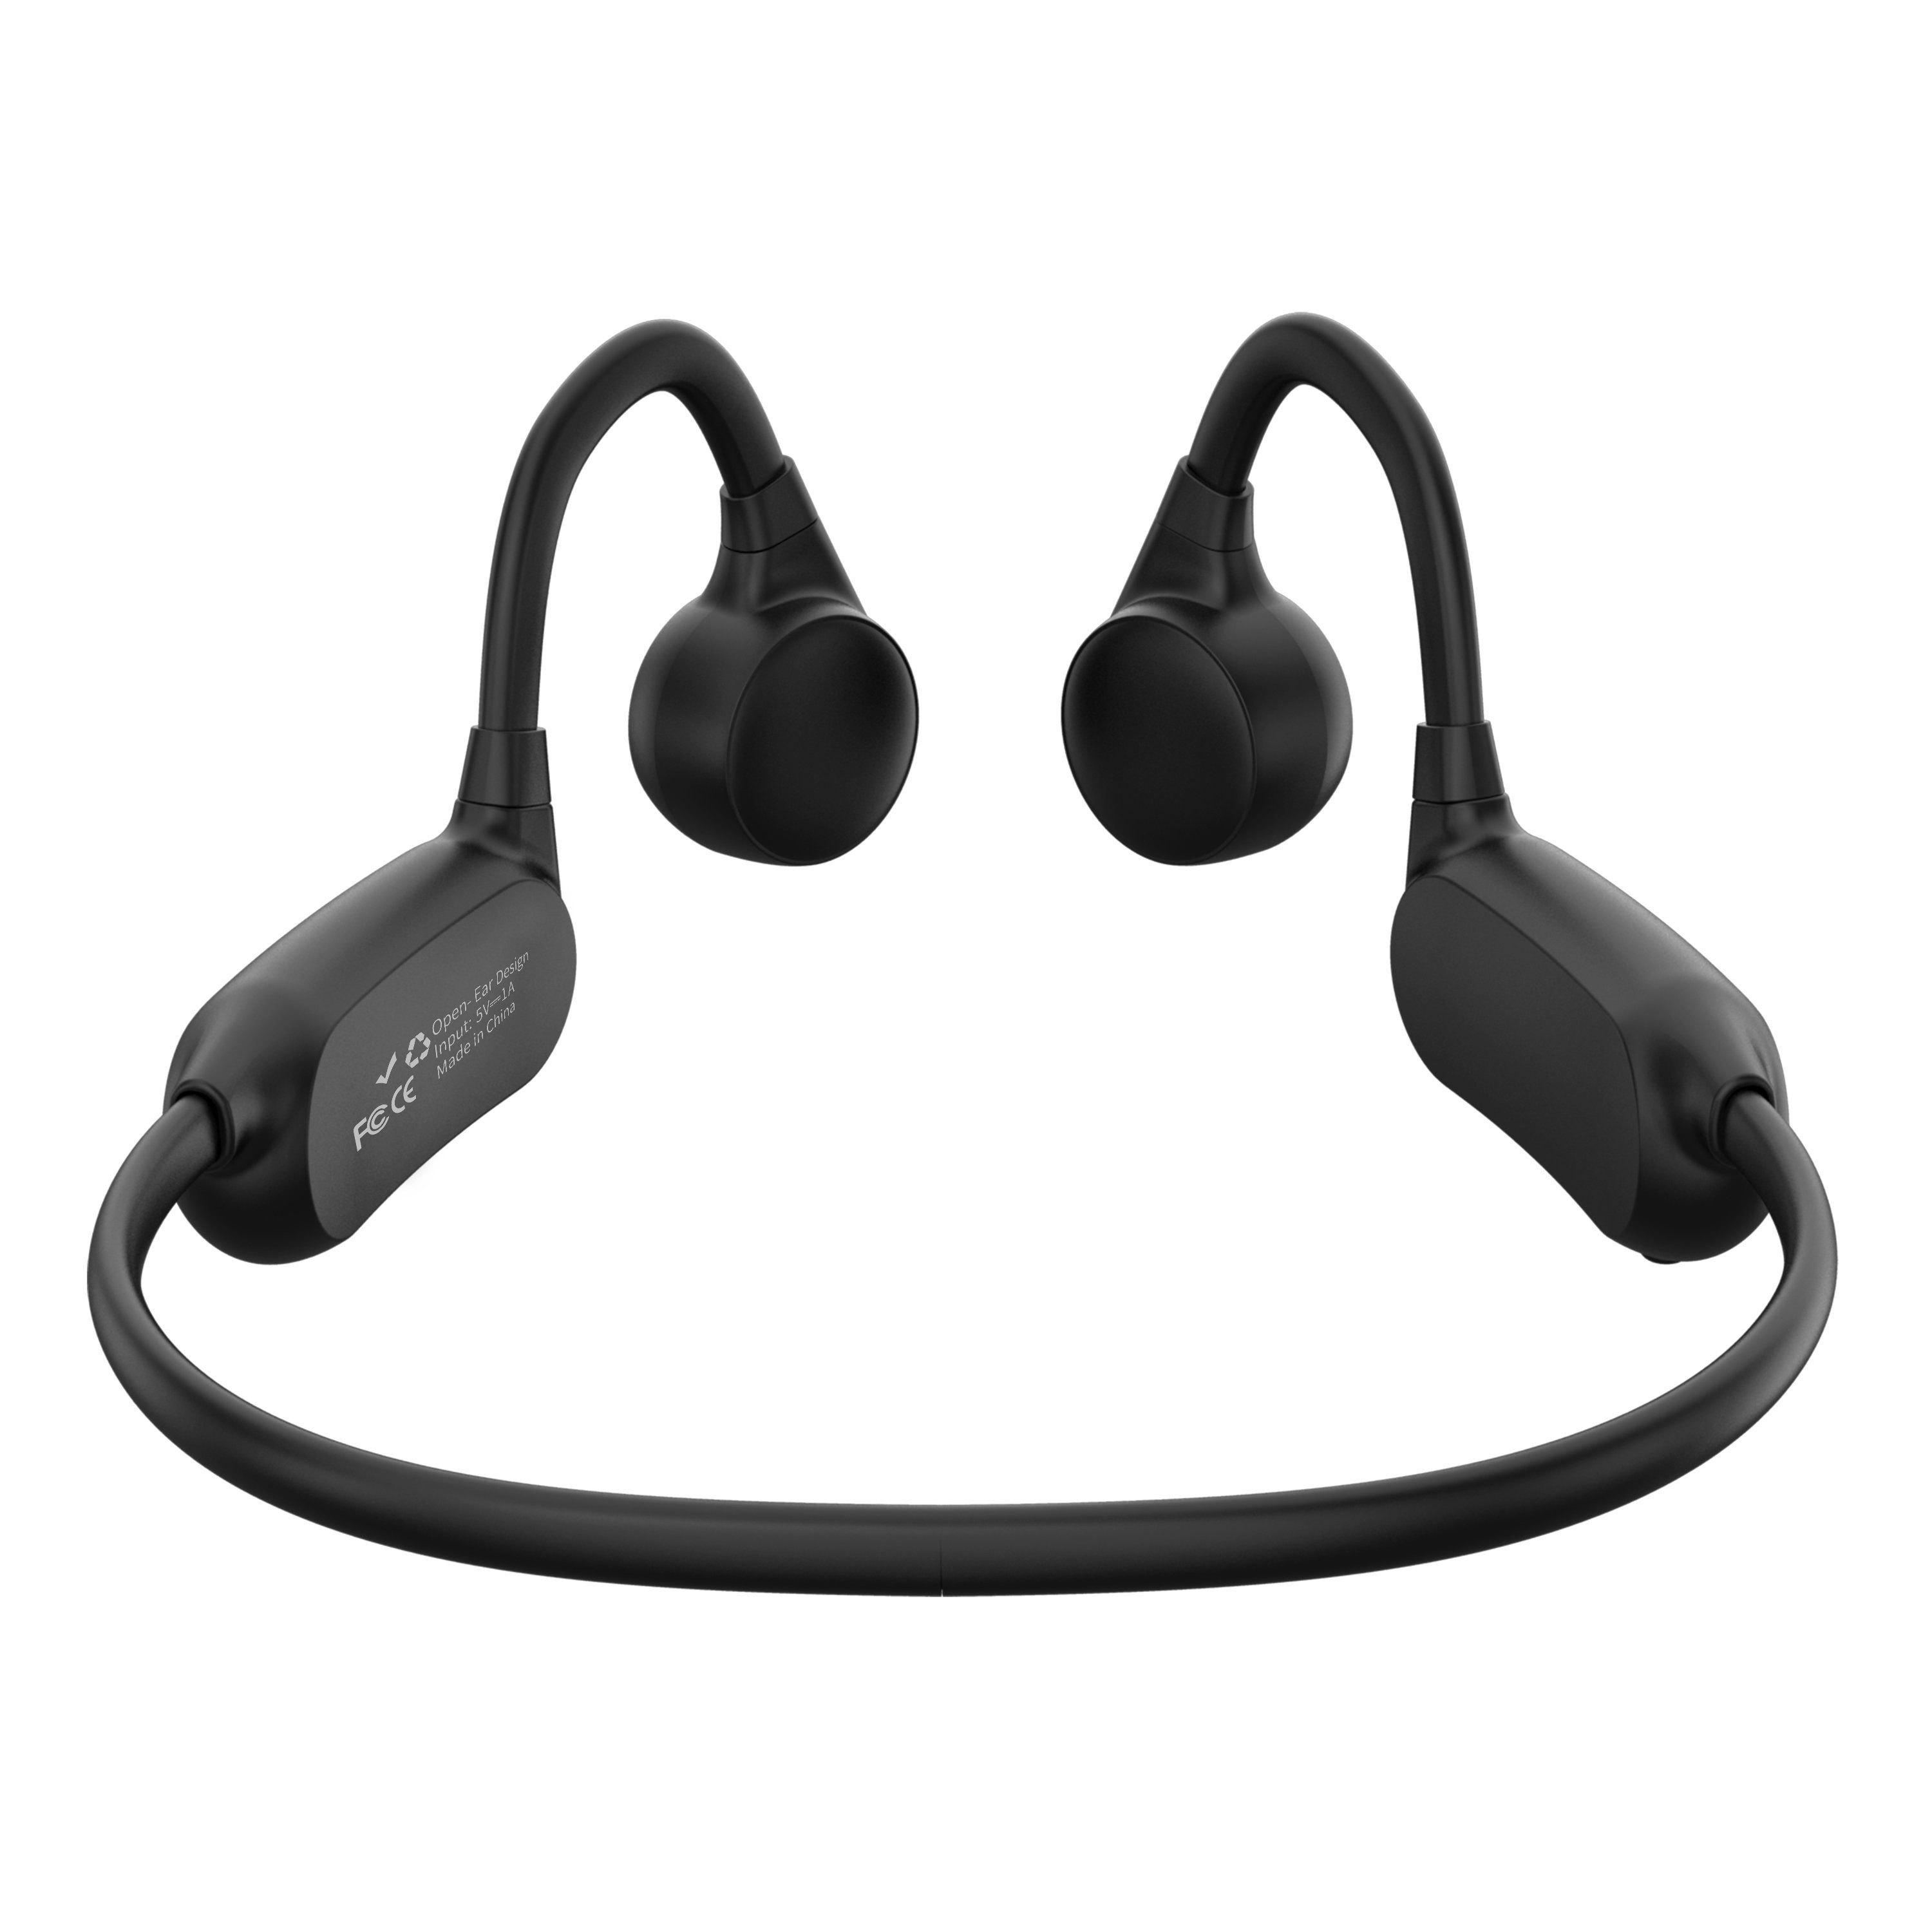 Open Wireless Joggen Bone MIRUX Wandern Hören, Laufen zum Sport-Kopfhörer SoloSE Schwarz Radfahren (Bluetooth, Doppelt Er) Ear Wireless,